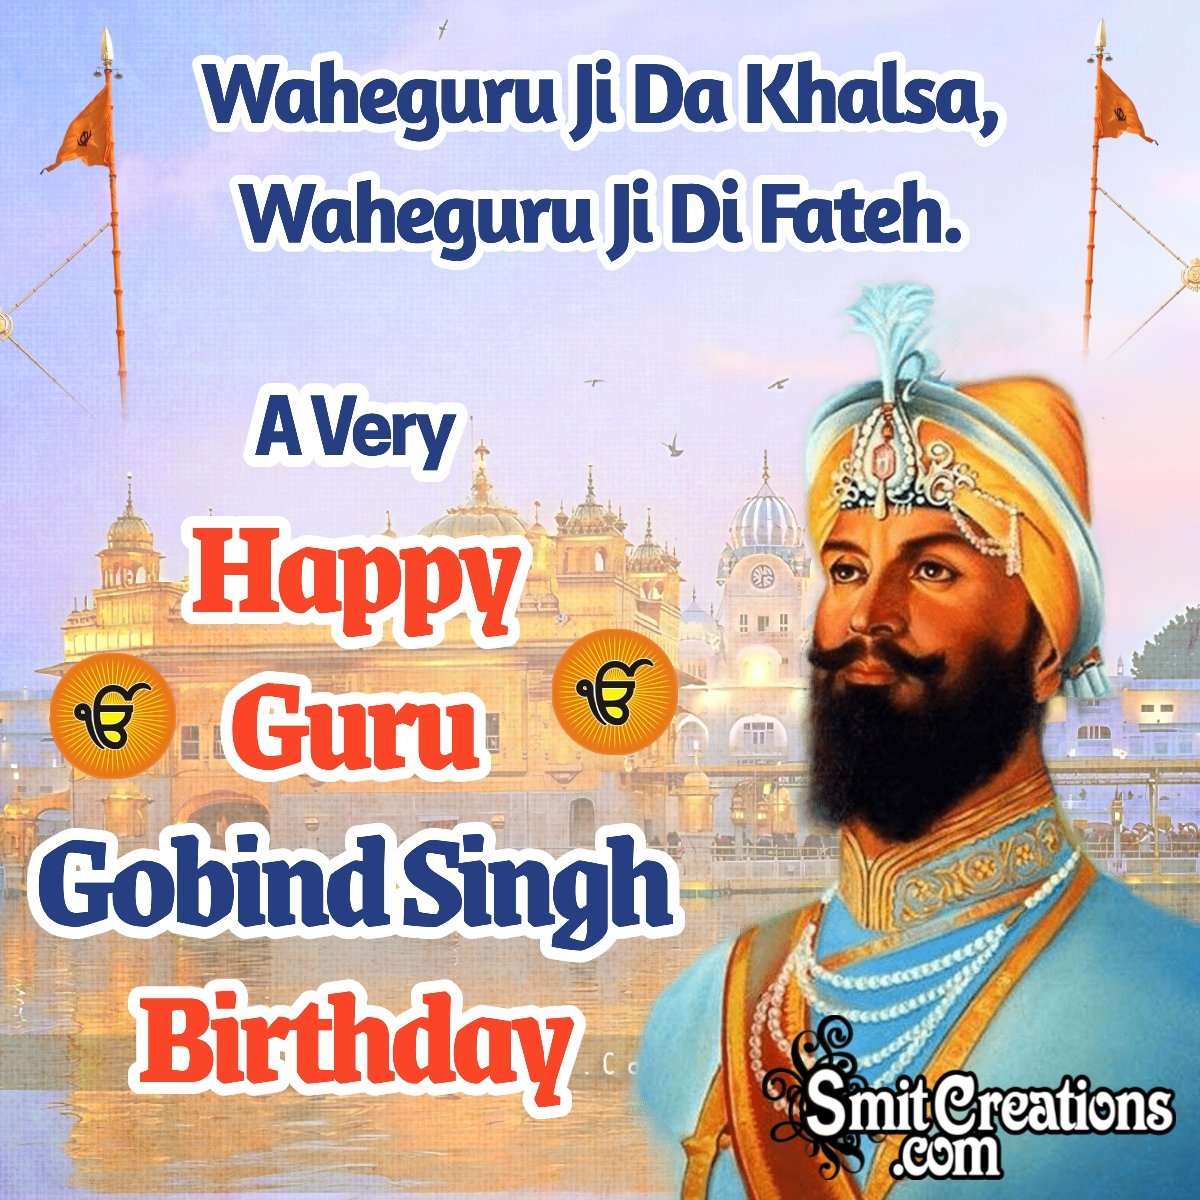 A Very Happy Guru Gobind Singh Birthday